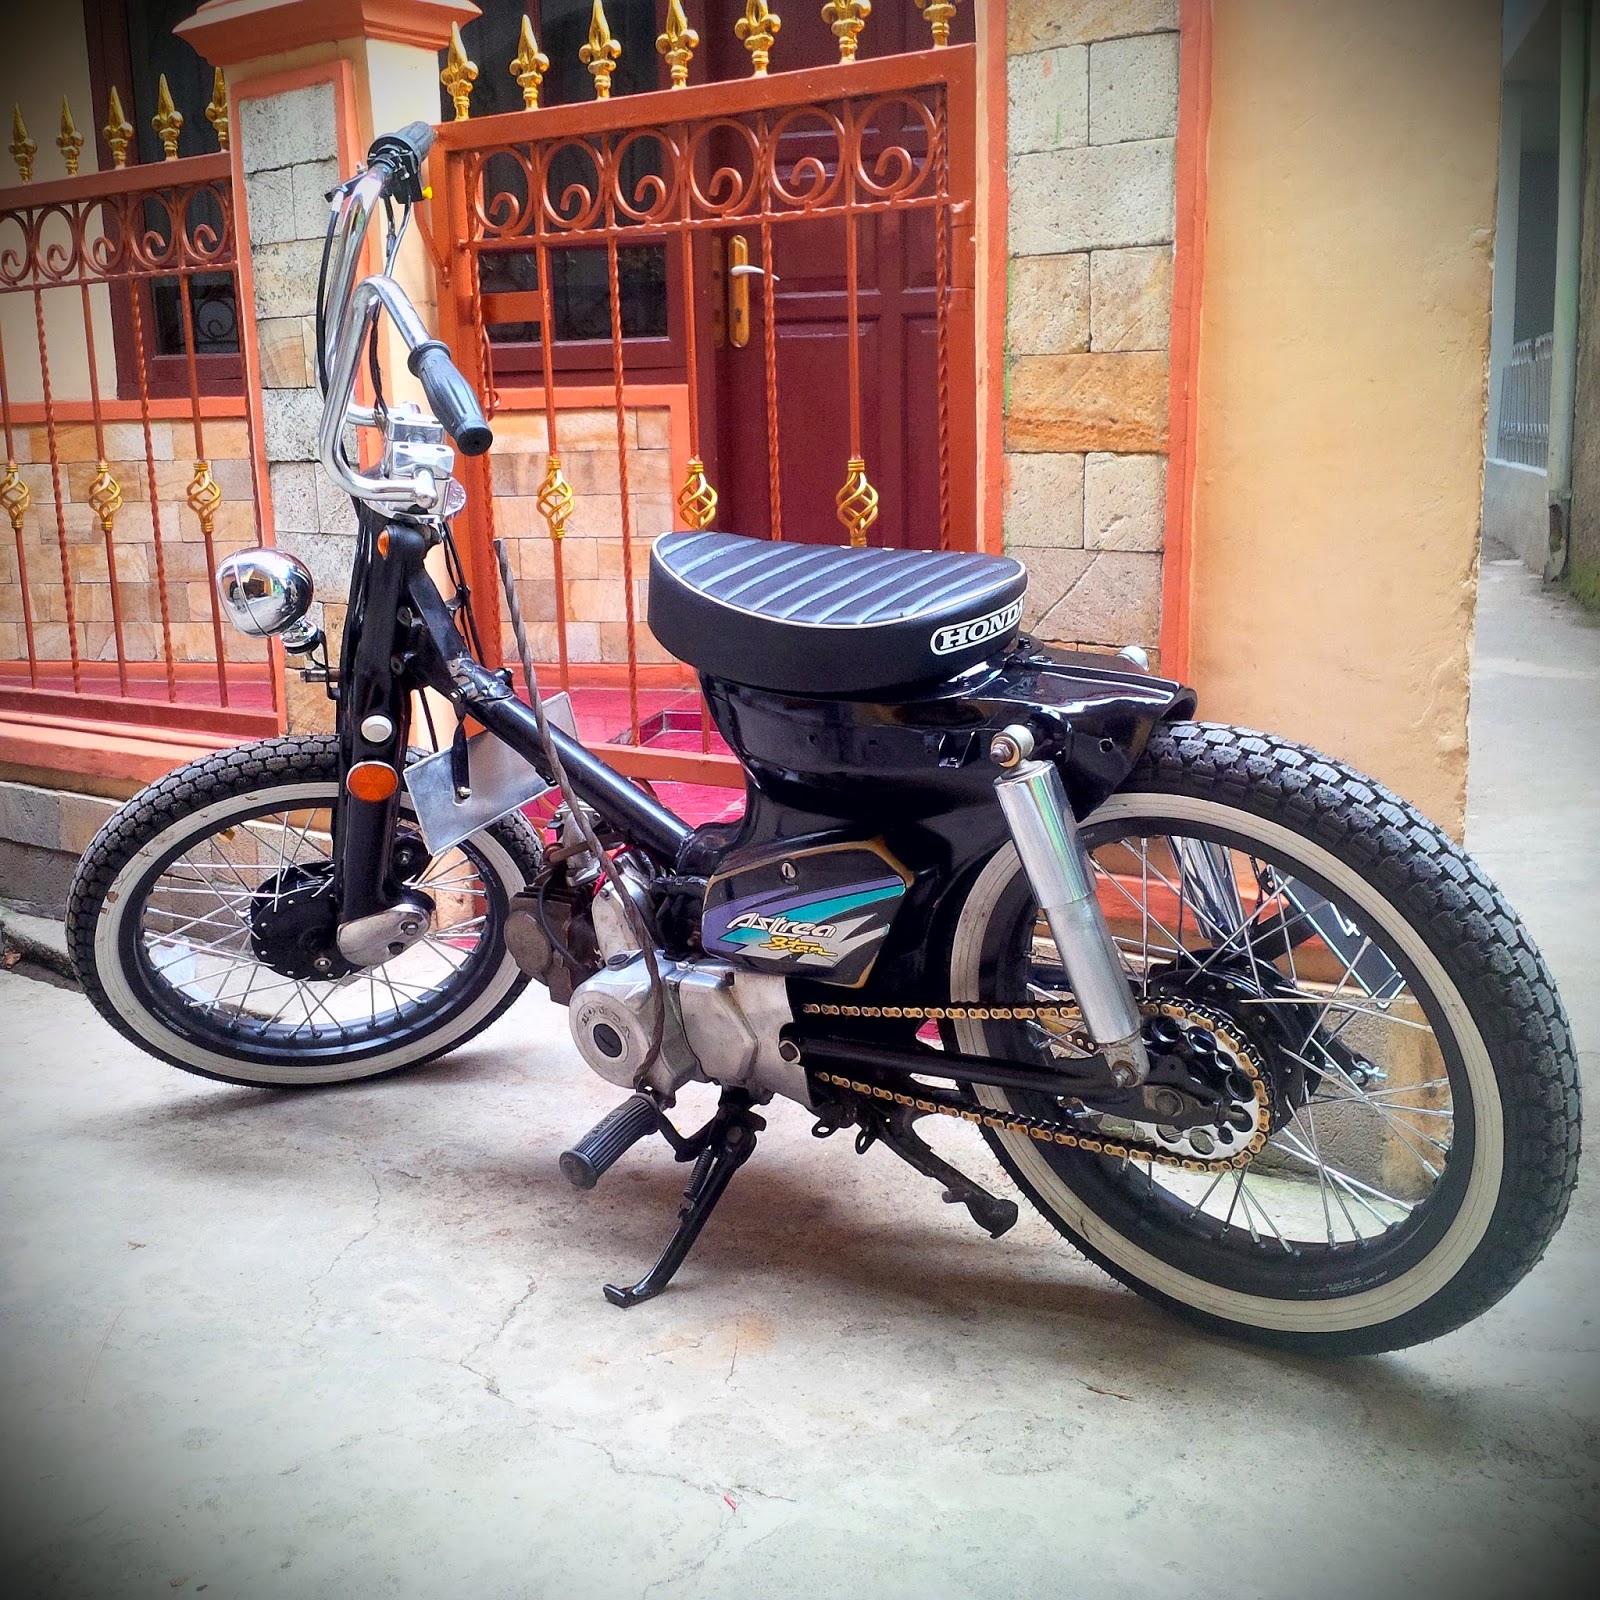 Bengkel Modifikasi Motor Choppy & Street Cub Murah Bandung ...